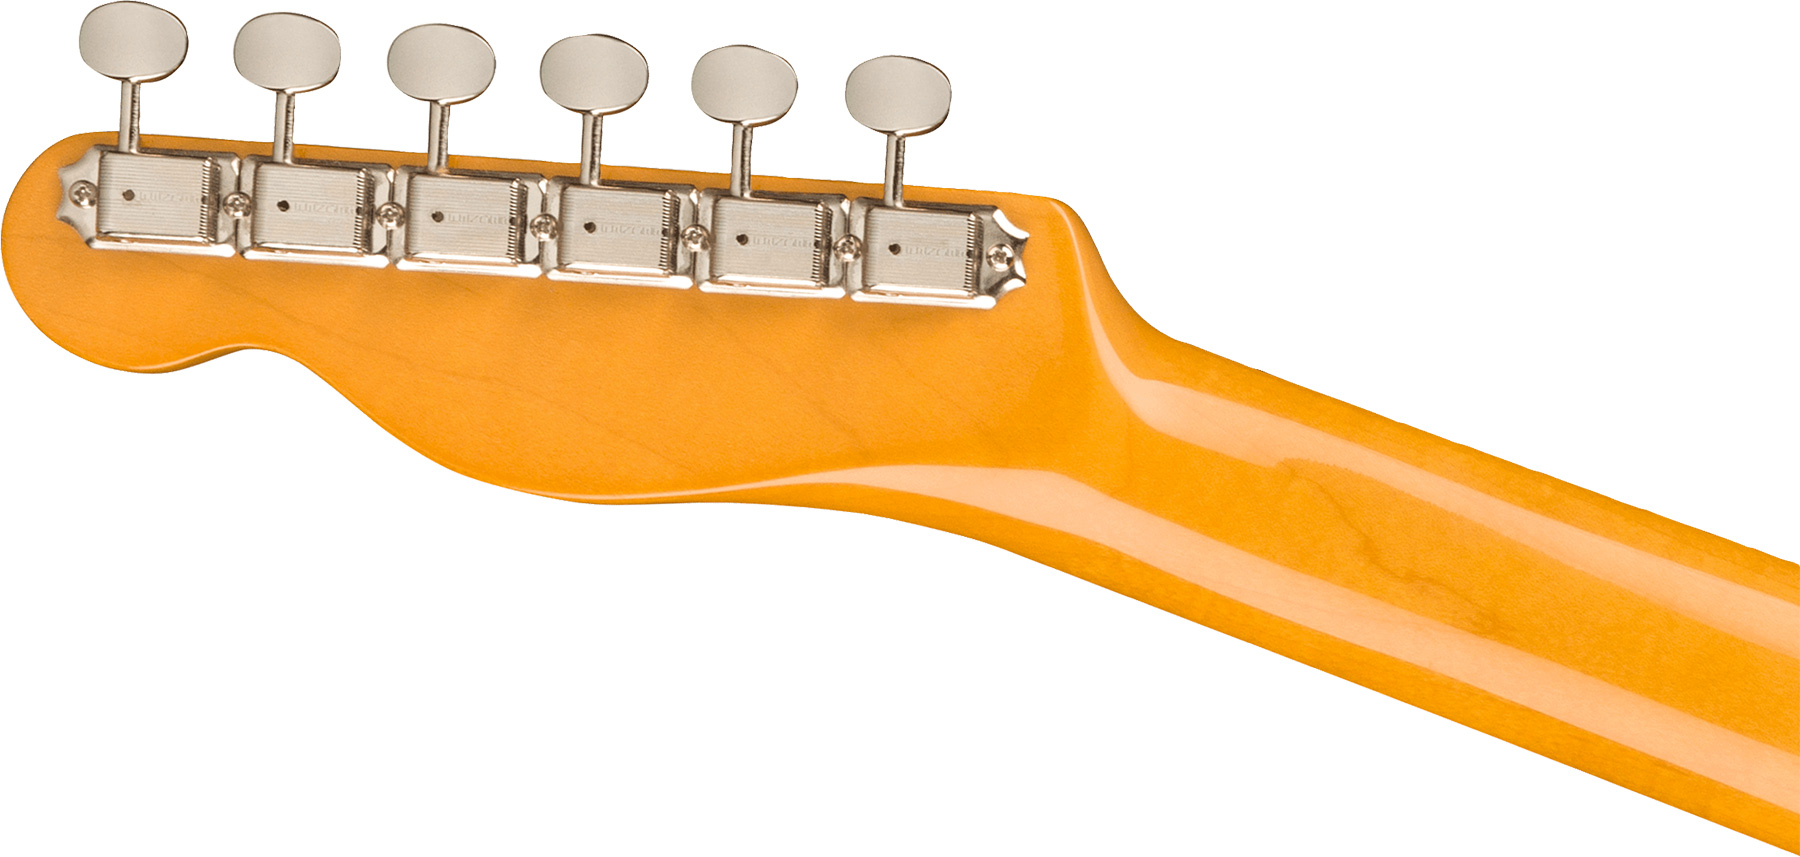 Fender Tele 1963 American Vintage Ii Usa 2s Ht Rw - Surf Green - Guitarra eléctrica con forma de tel - Variation 3